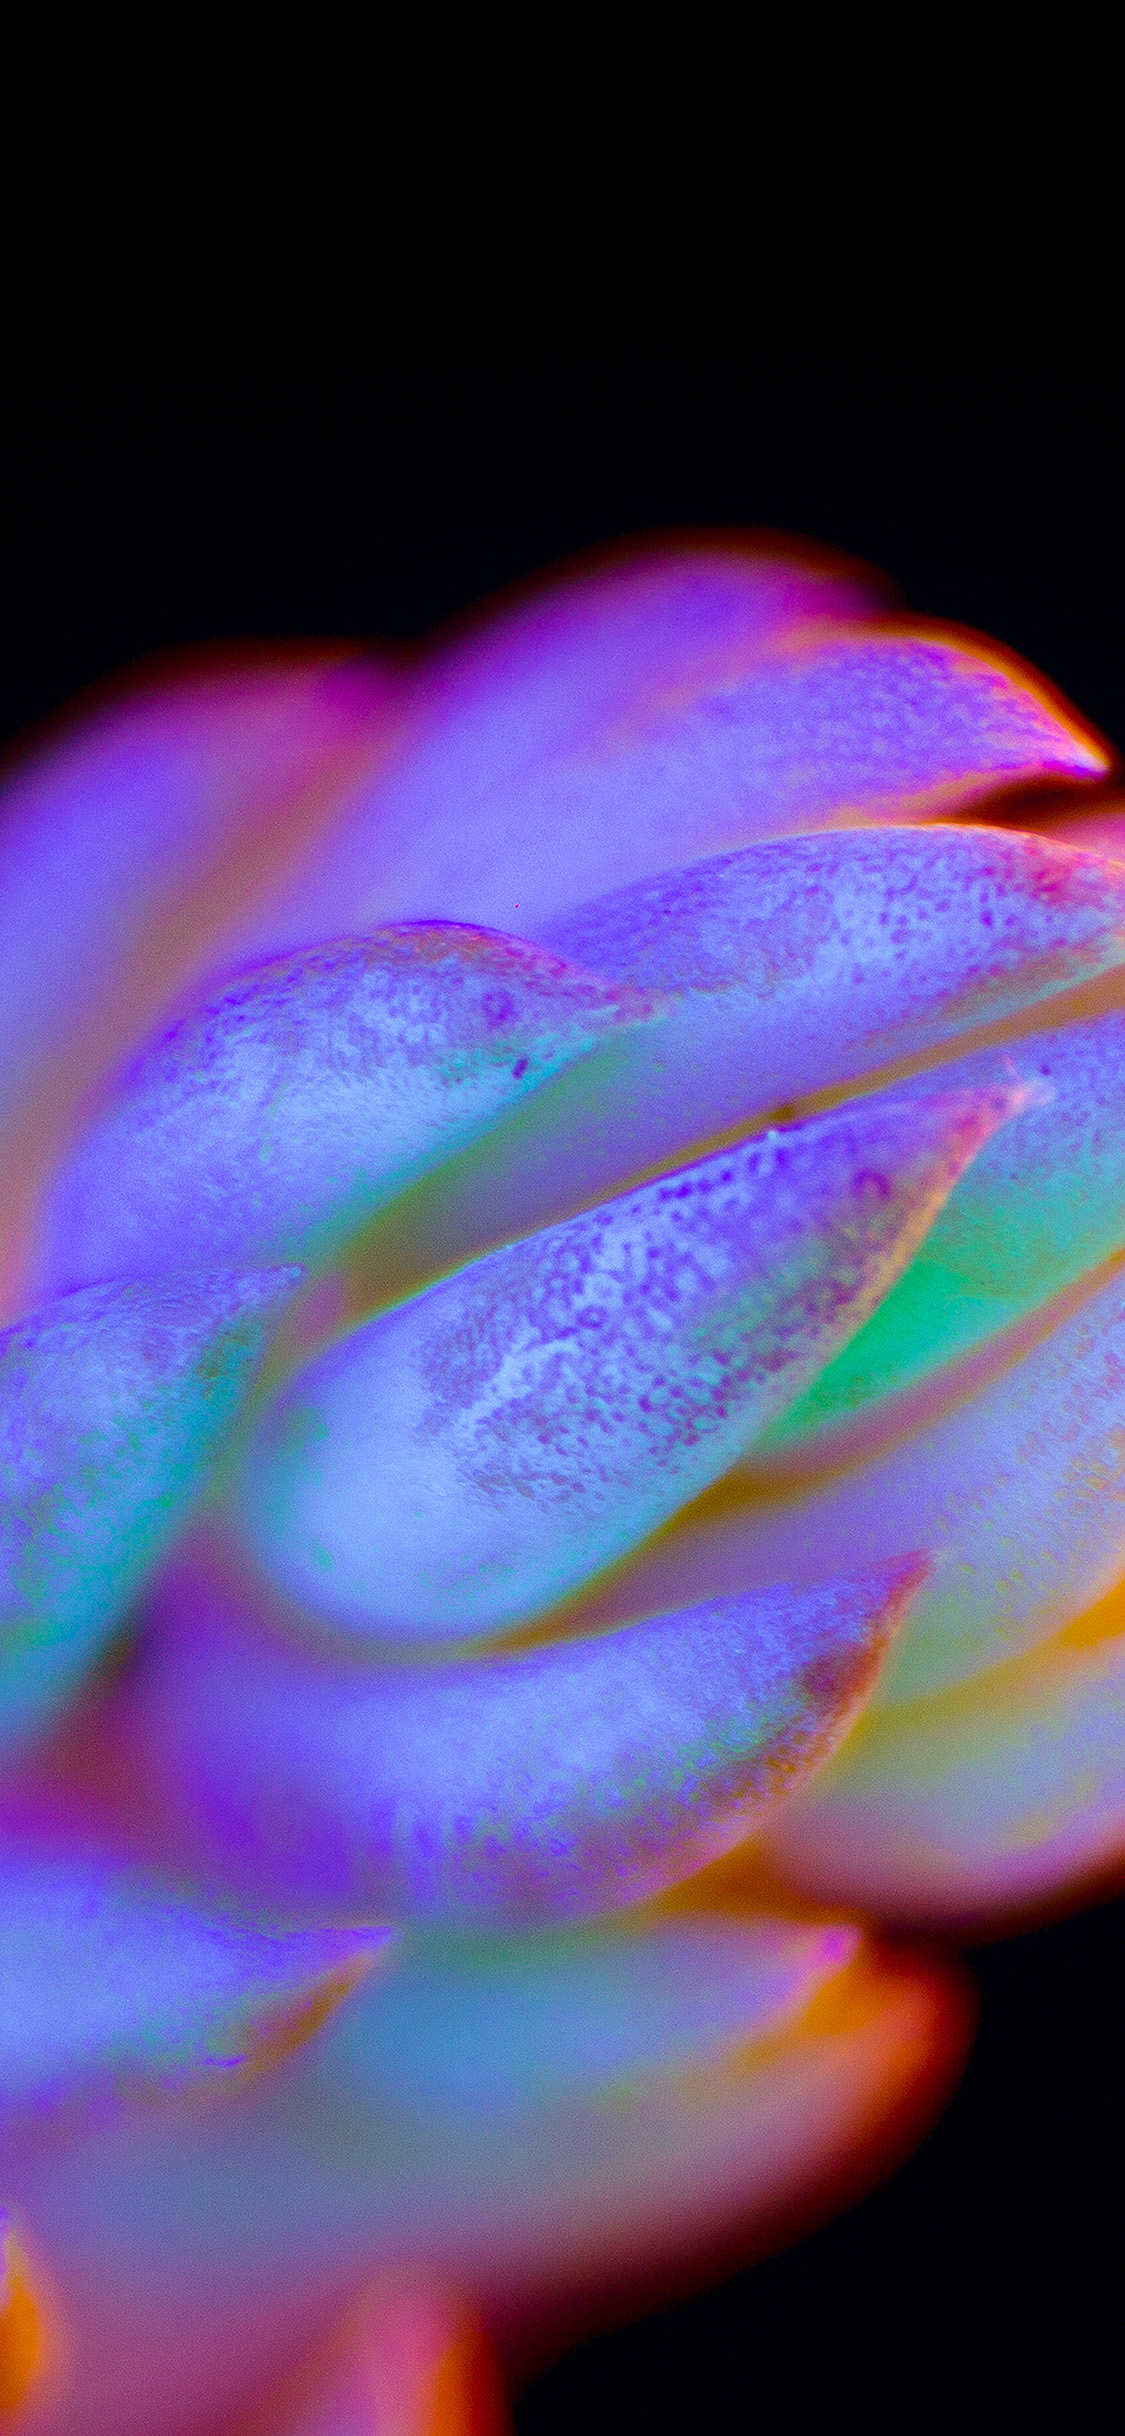 1125x2436 | iPhone X wallpaper | bg80-neon-creature-dark-colorflower-art